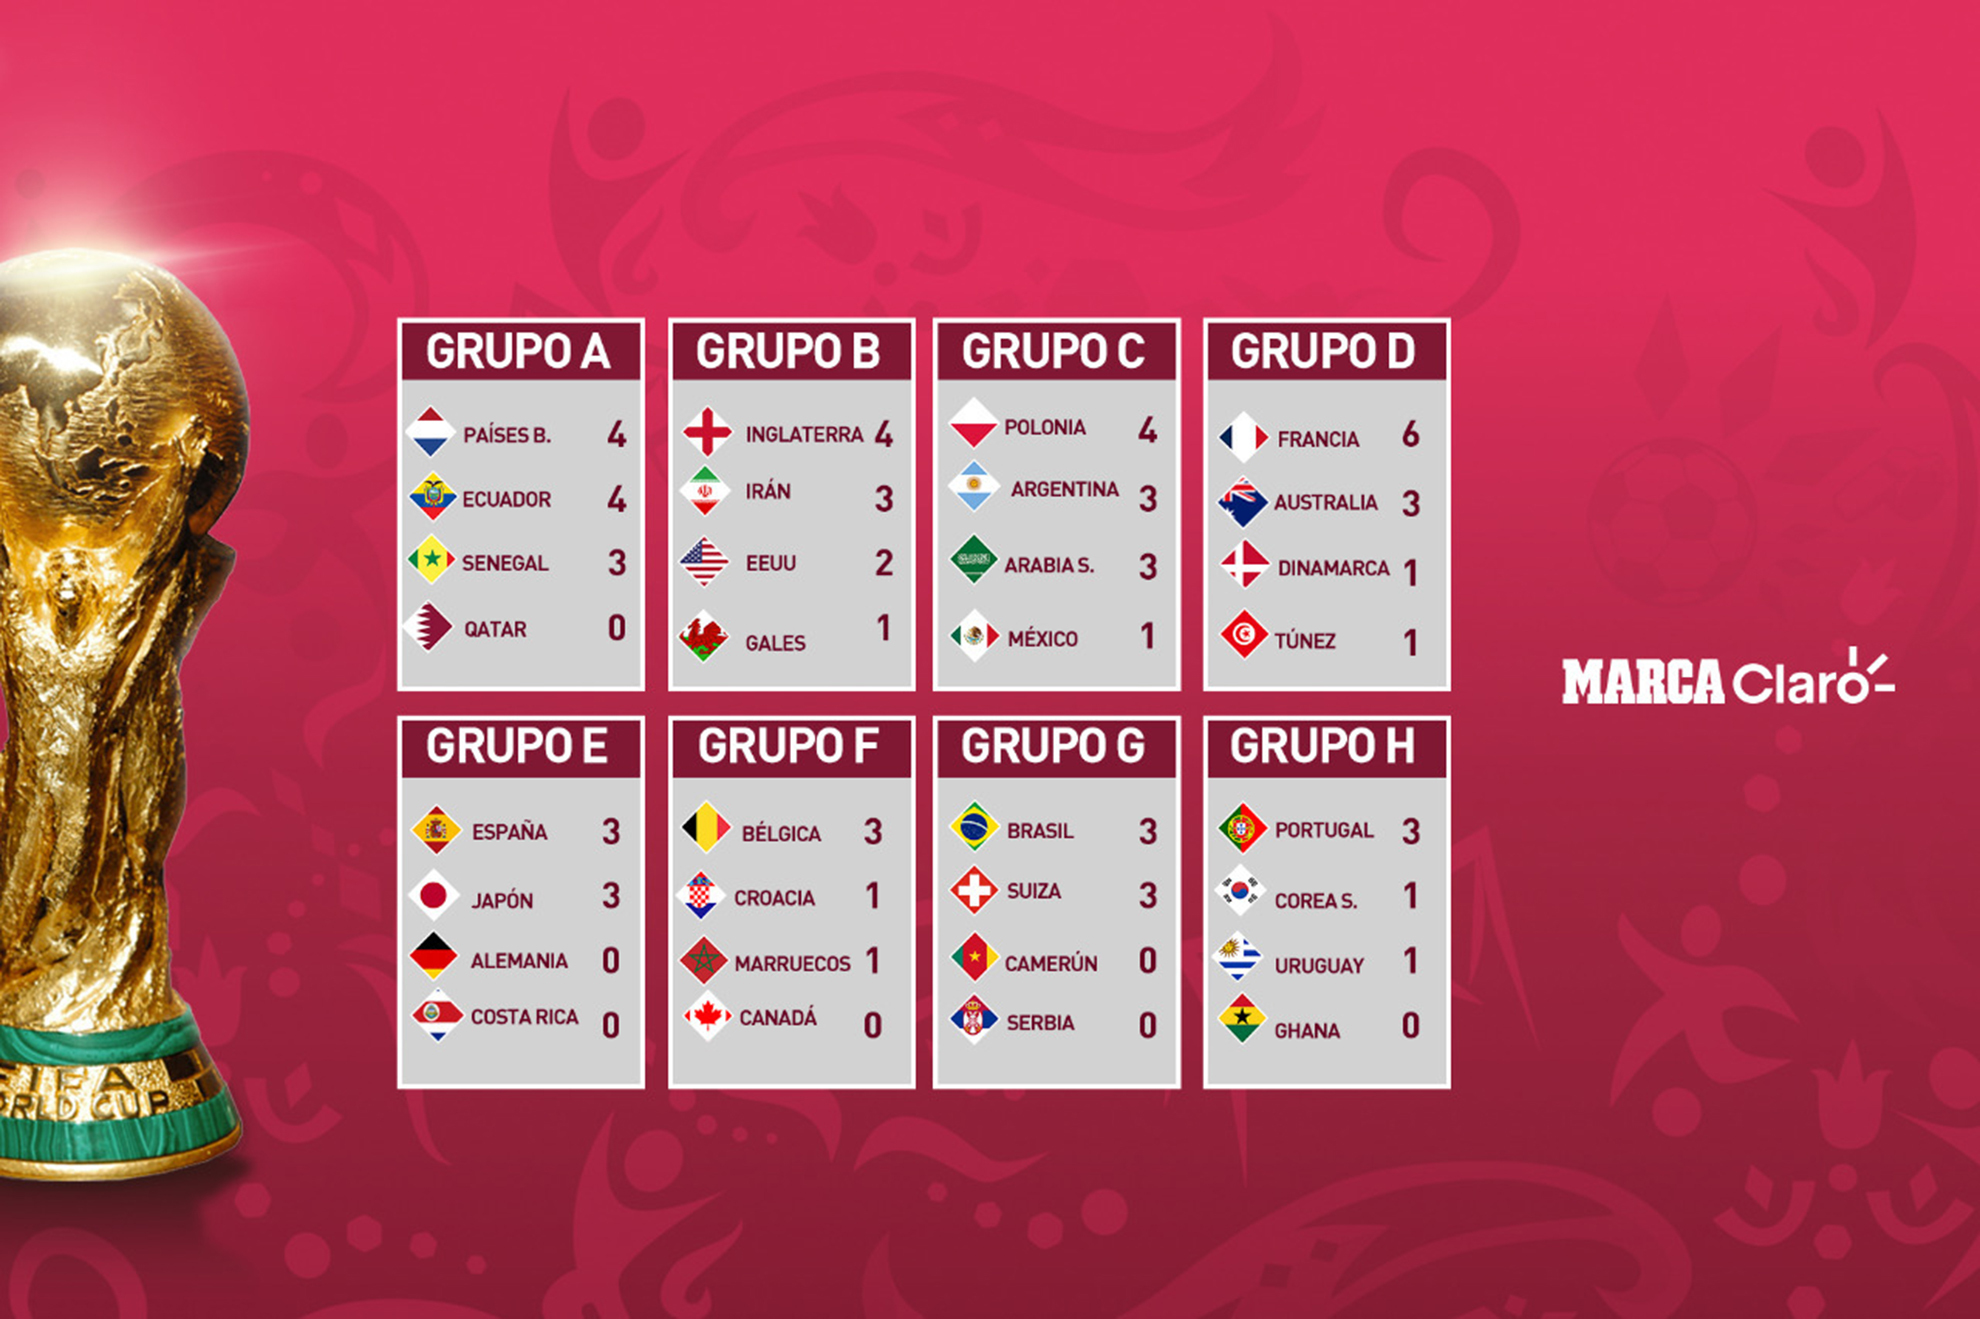 Así van los grupos del Mundial de Qatar 2022 en el Día 8: resultados y posiciones al momento. | Marca Claro